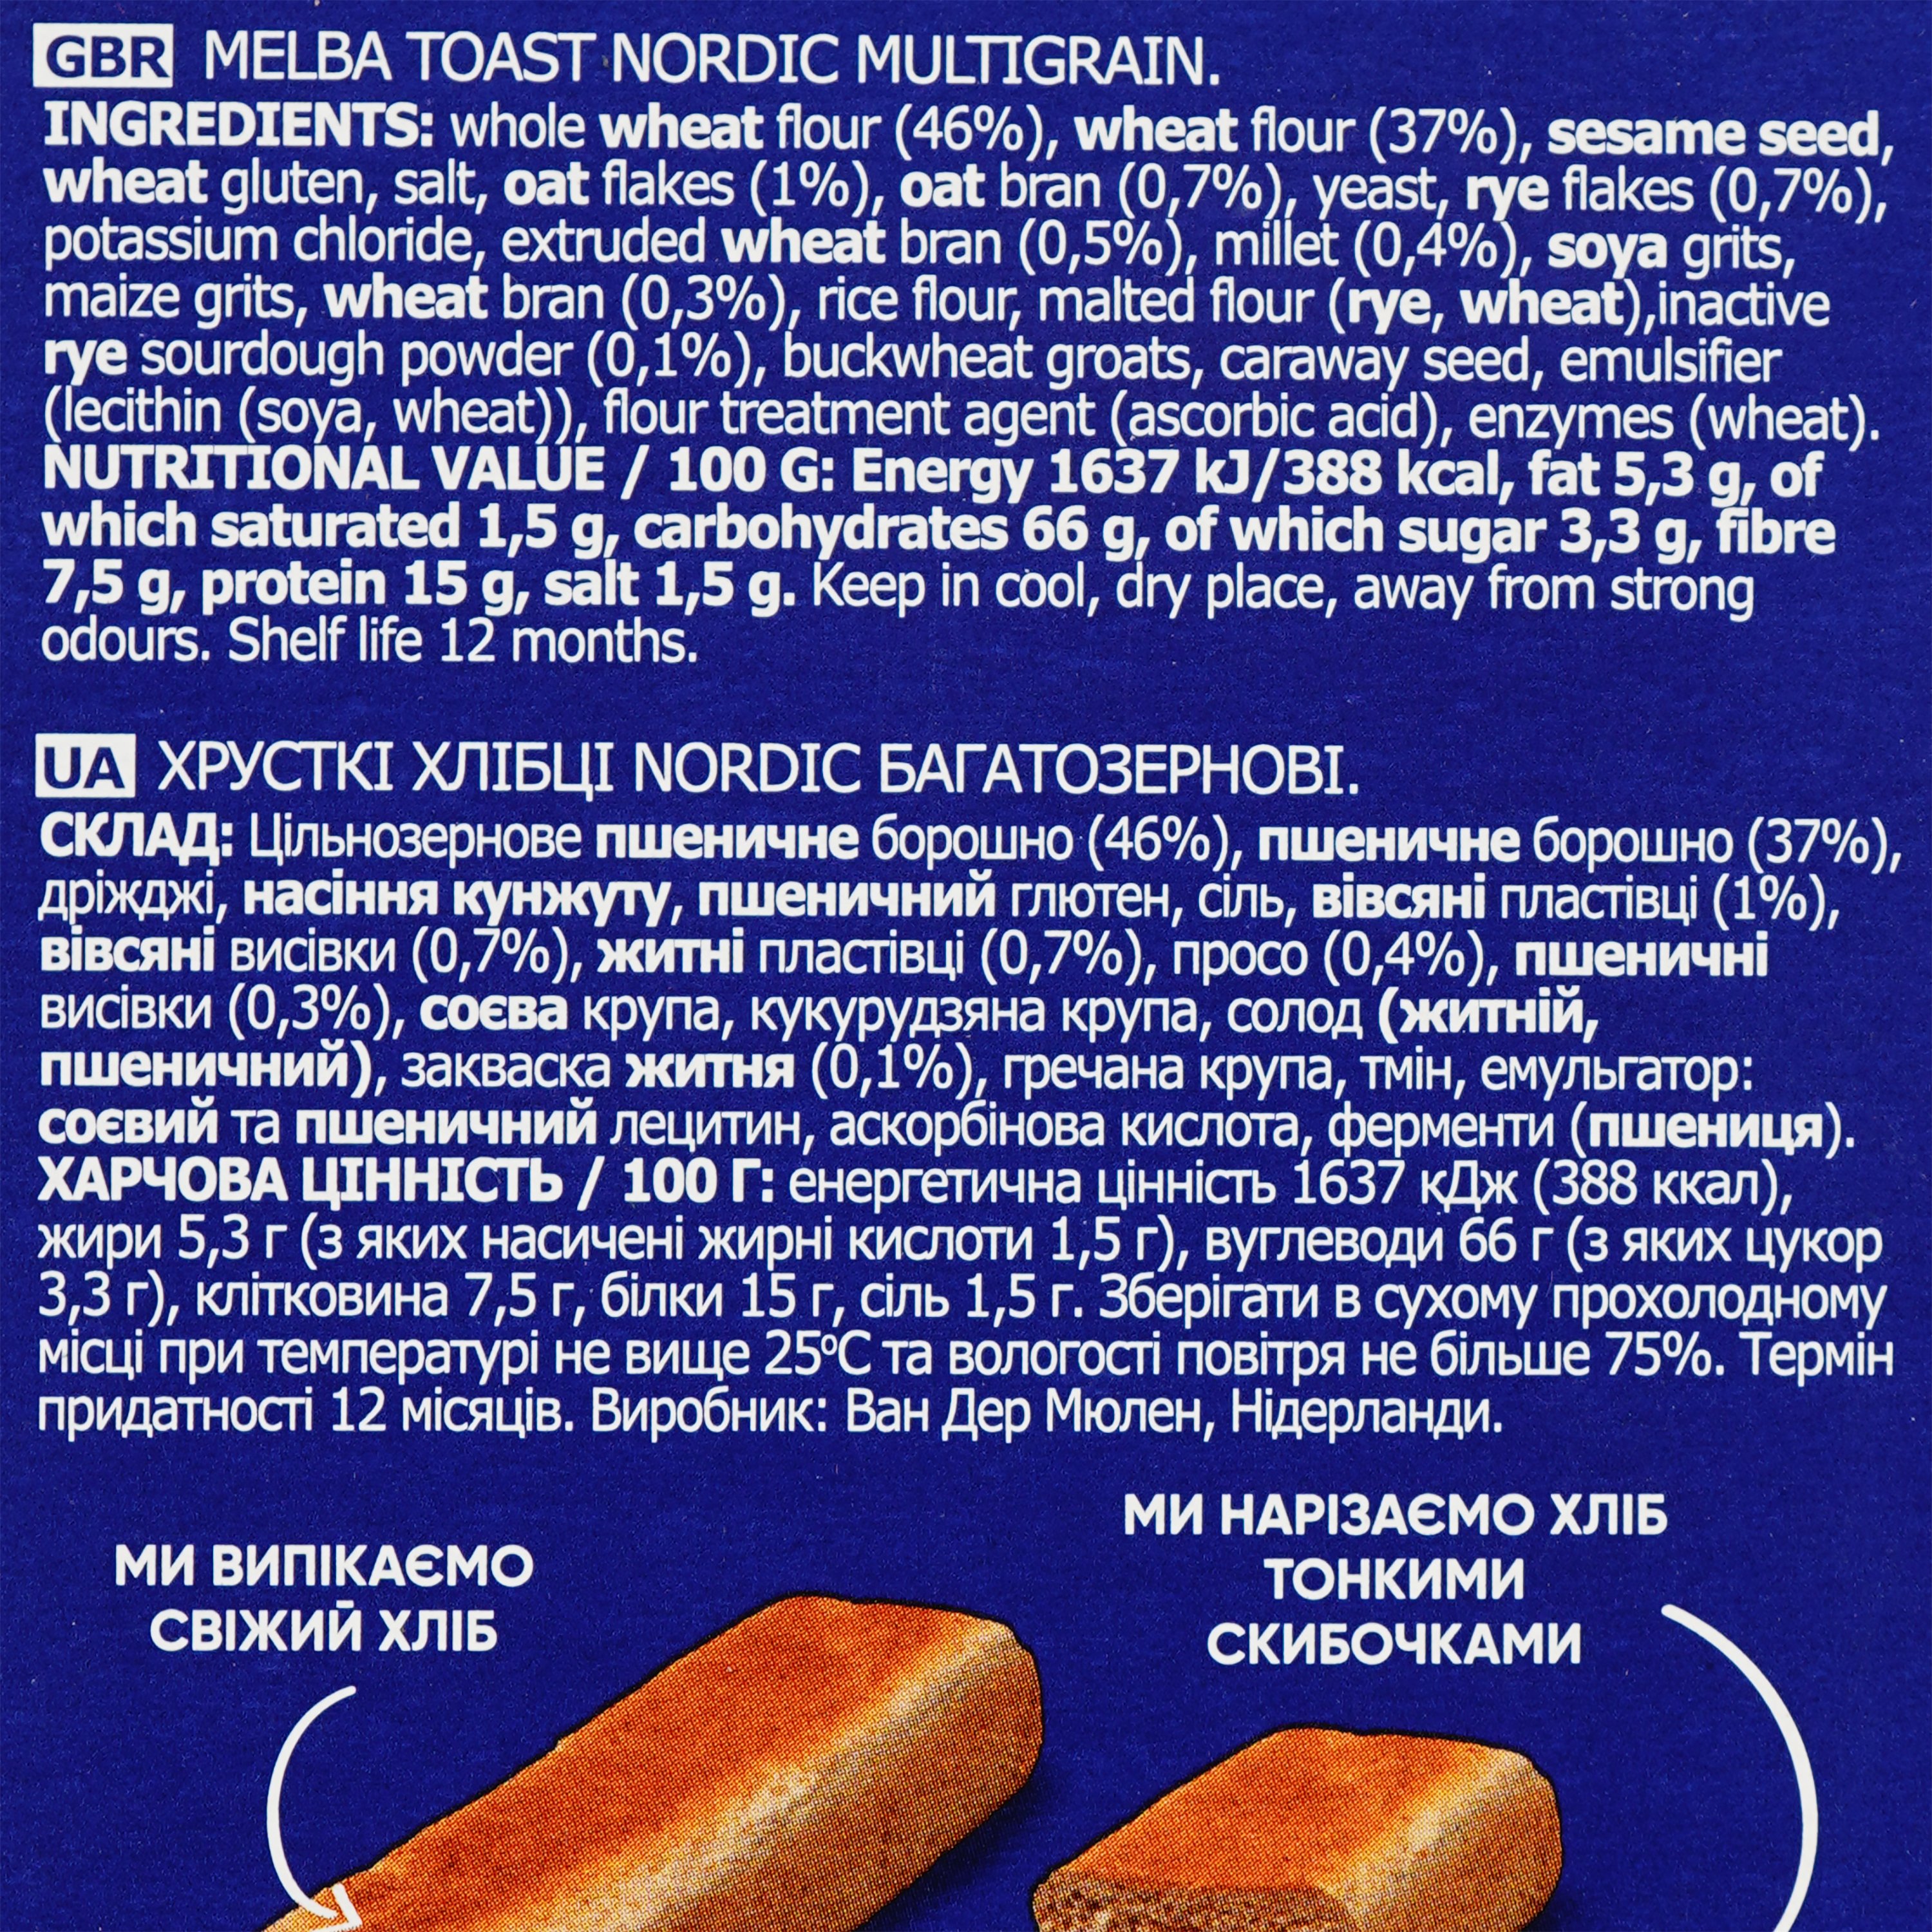 Хлібці Nordic багатозернові 100 г (525983) - фото 4